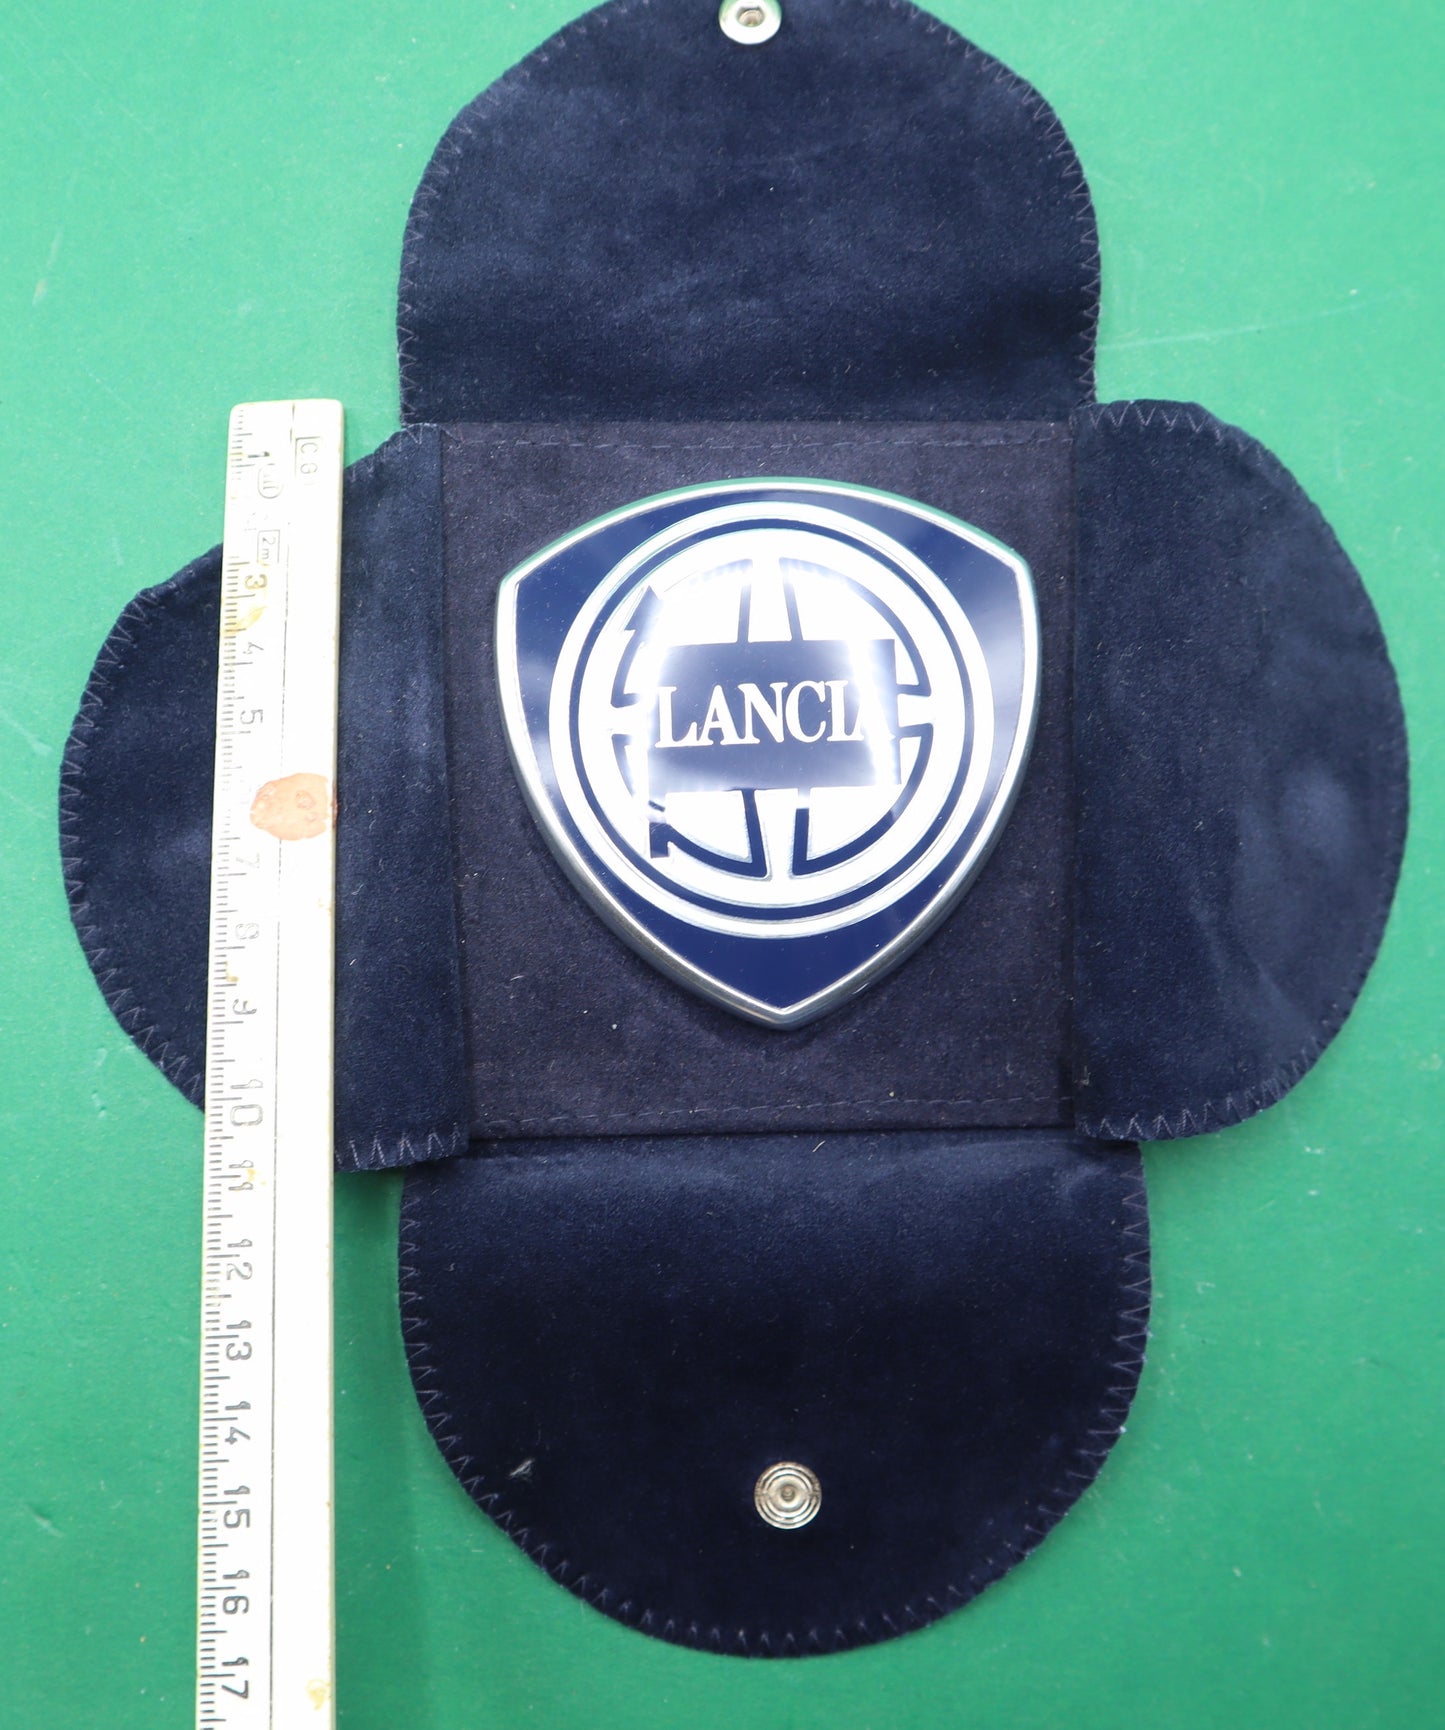 Vintage Lancia Car Emblem  Enamel logo with Velvet pouch paper holder